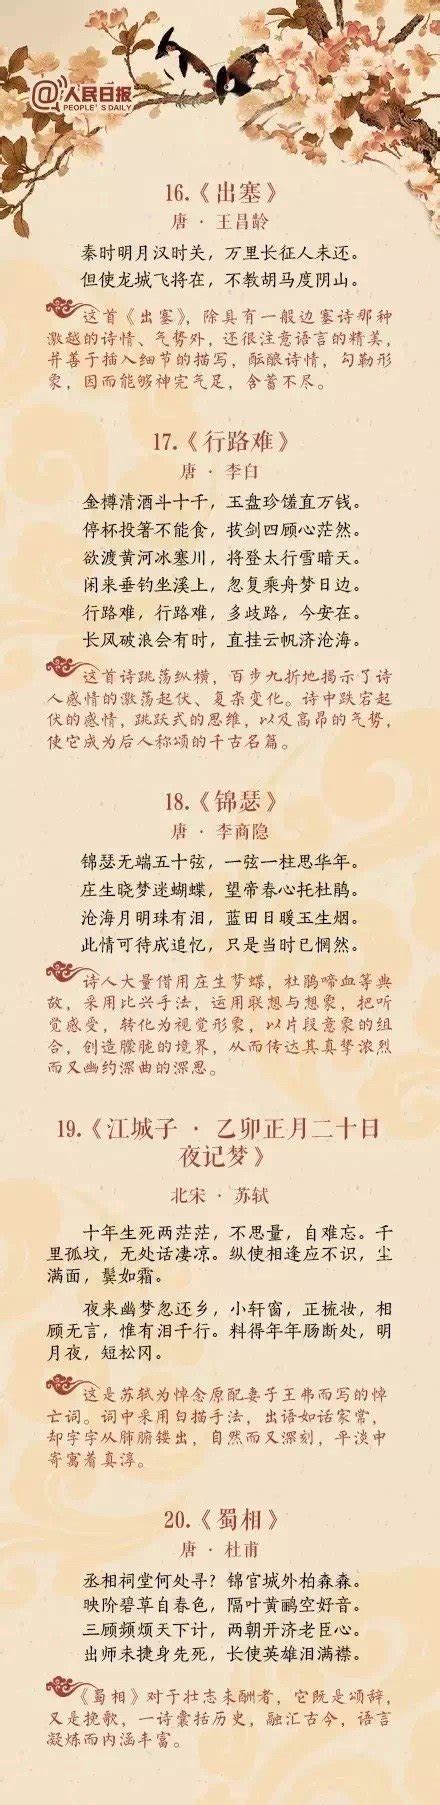 人民日报评出中国历史上高水平的40首诗词